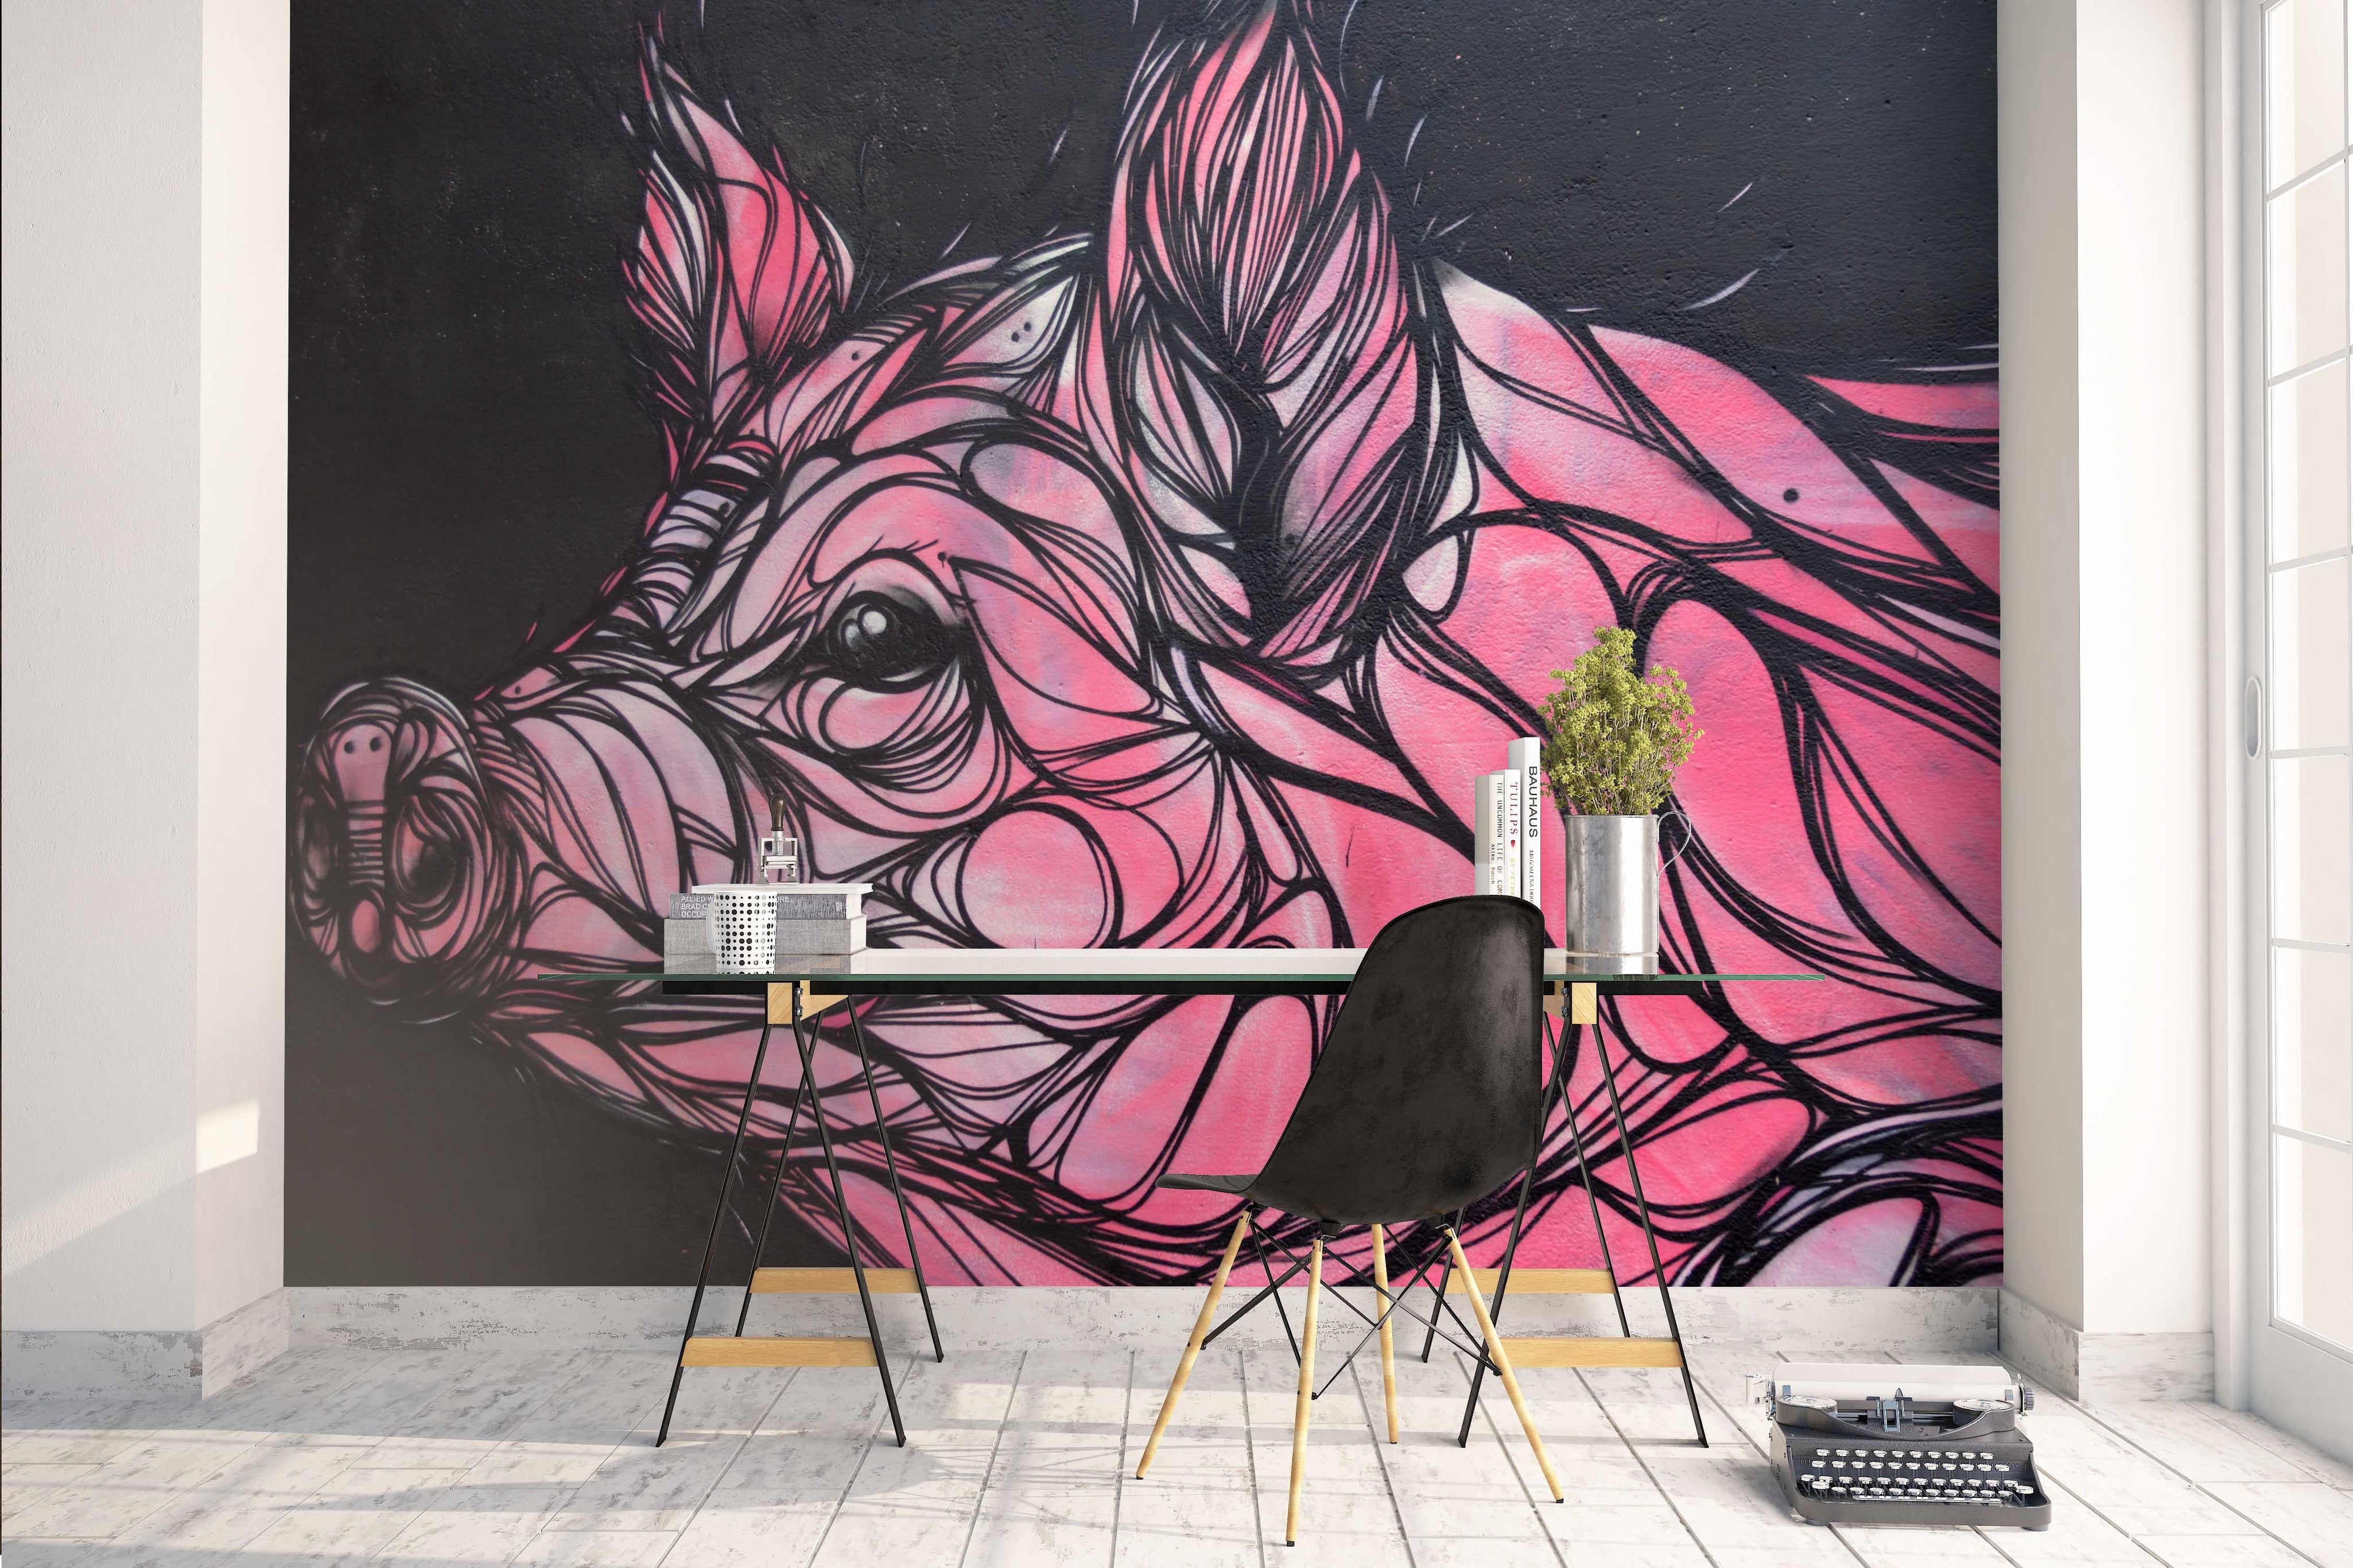 3D Abstract Pink Pig Graffiti Wall Mural Wallpaper 183- Jess Art Decoration